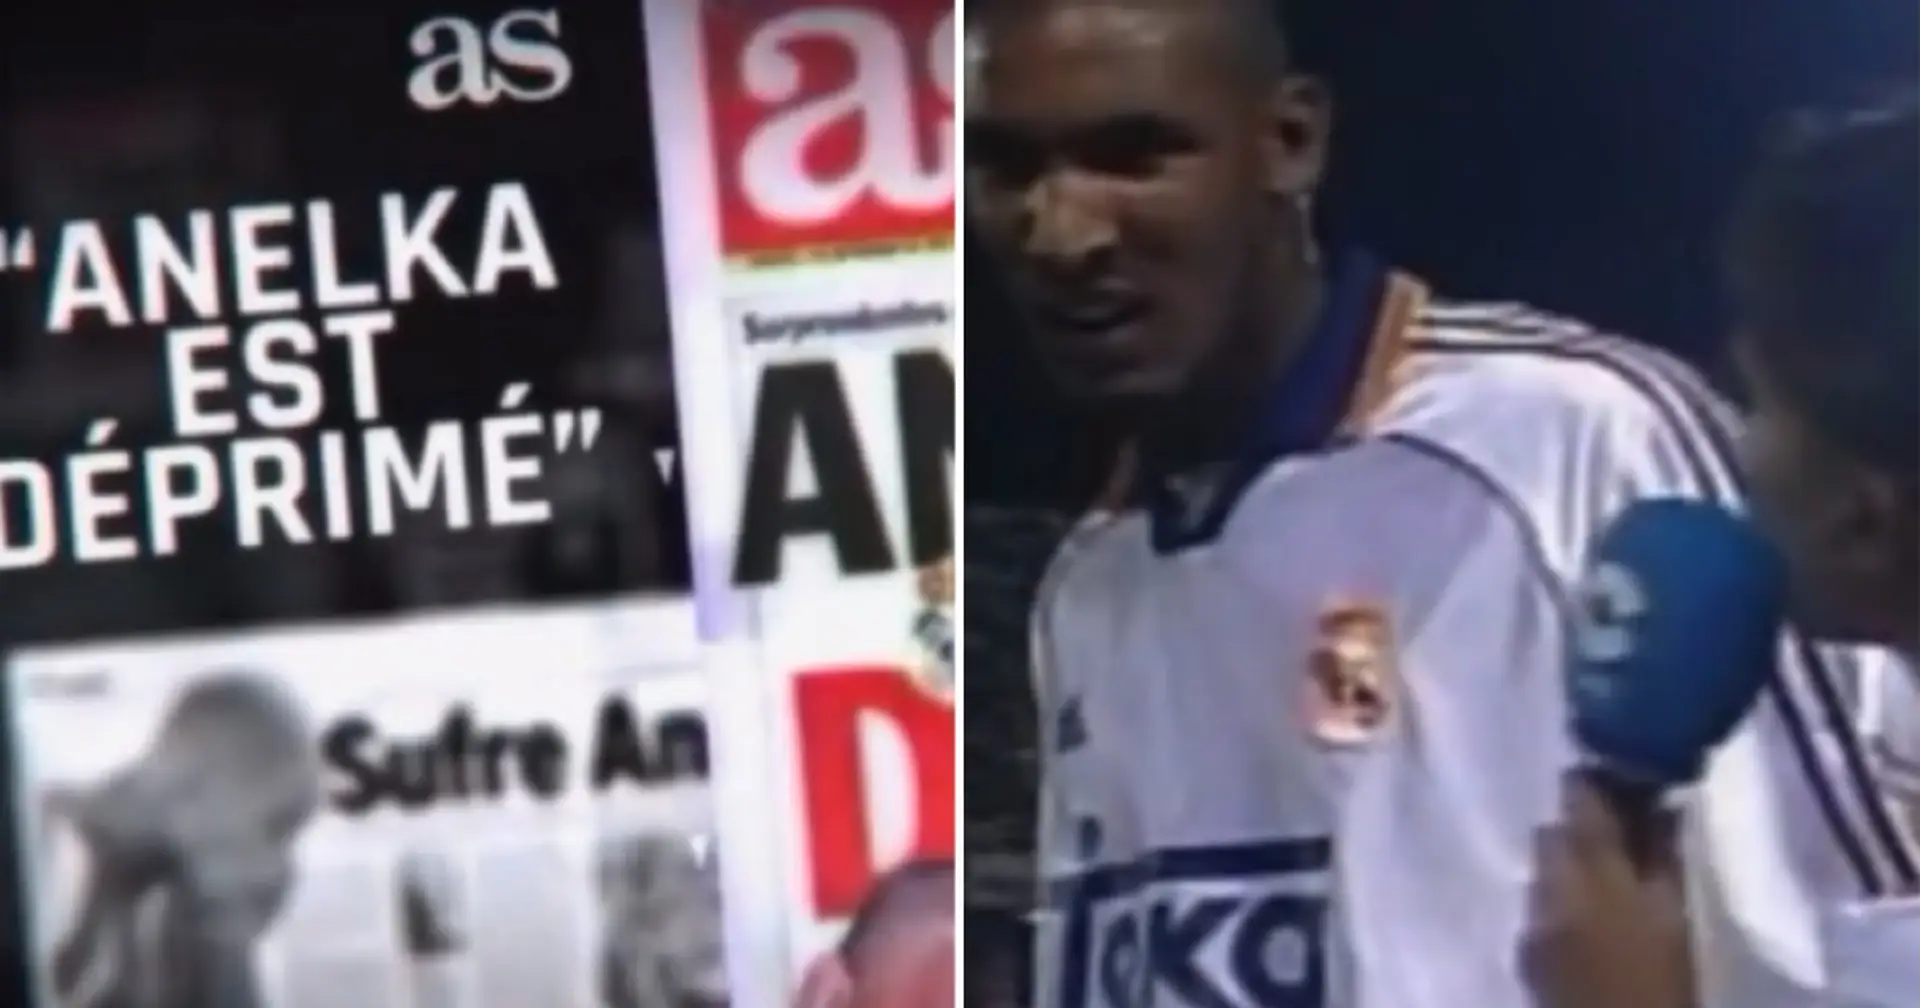 "Endlich ein Tor geschossen... auf der Konsole": Anelka erinnert sich an den Druck der spanischen Medien nach seinem Wechsel zu Real Madrid